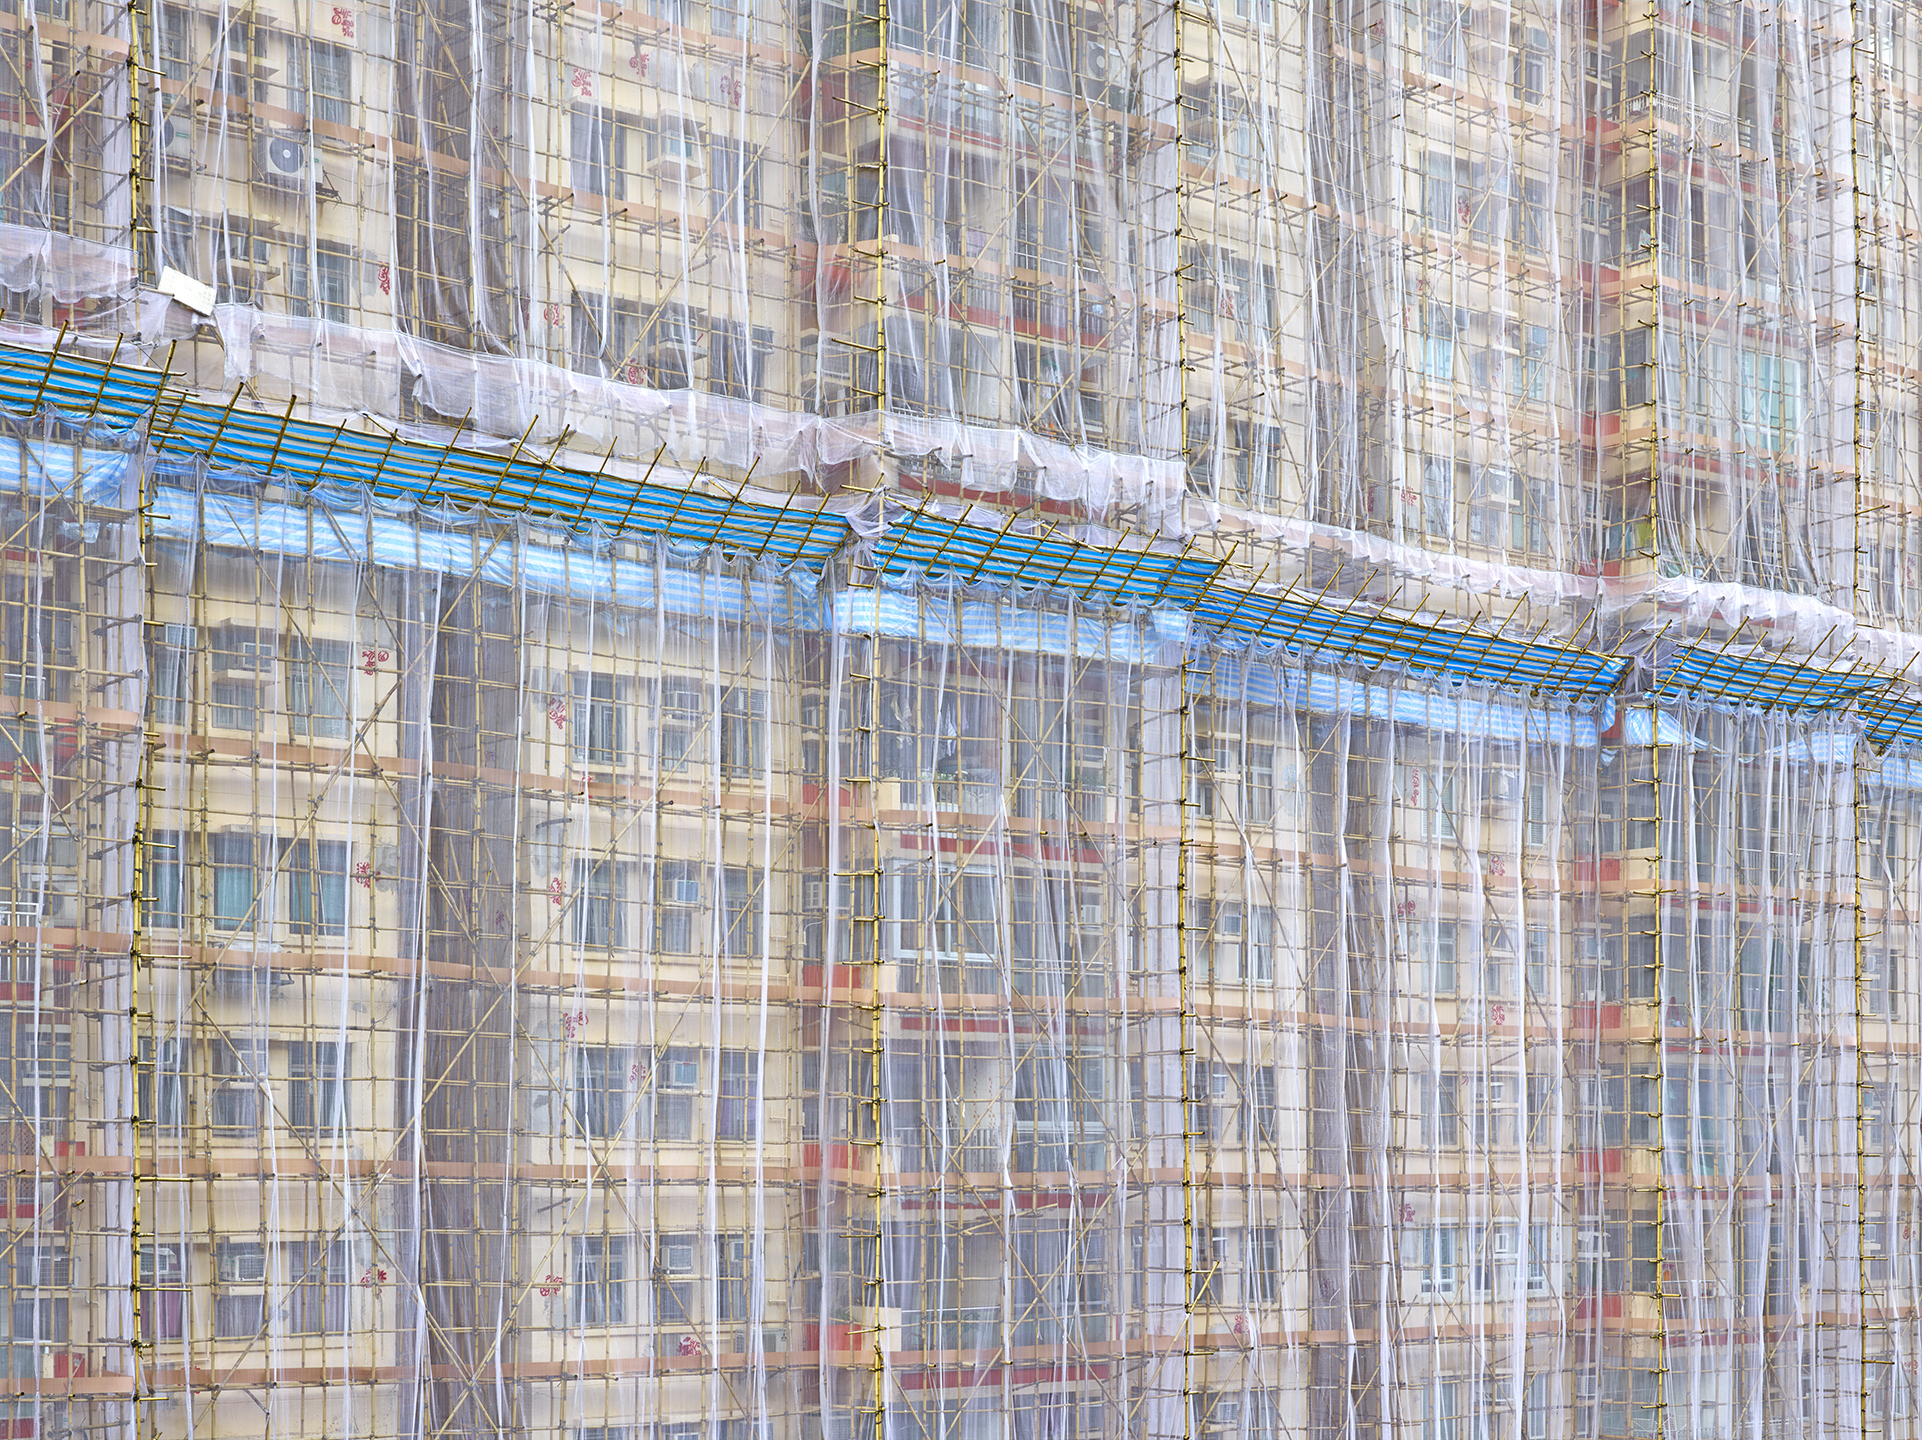 竹で組まれた足場も香港ではよく目にする/Peter Steinhauer 